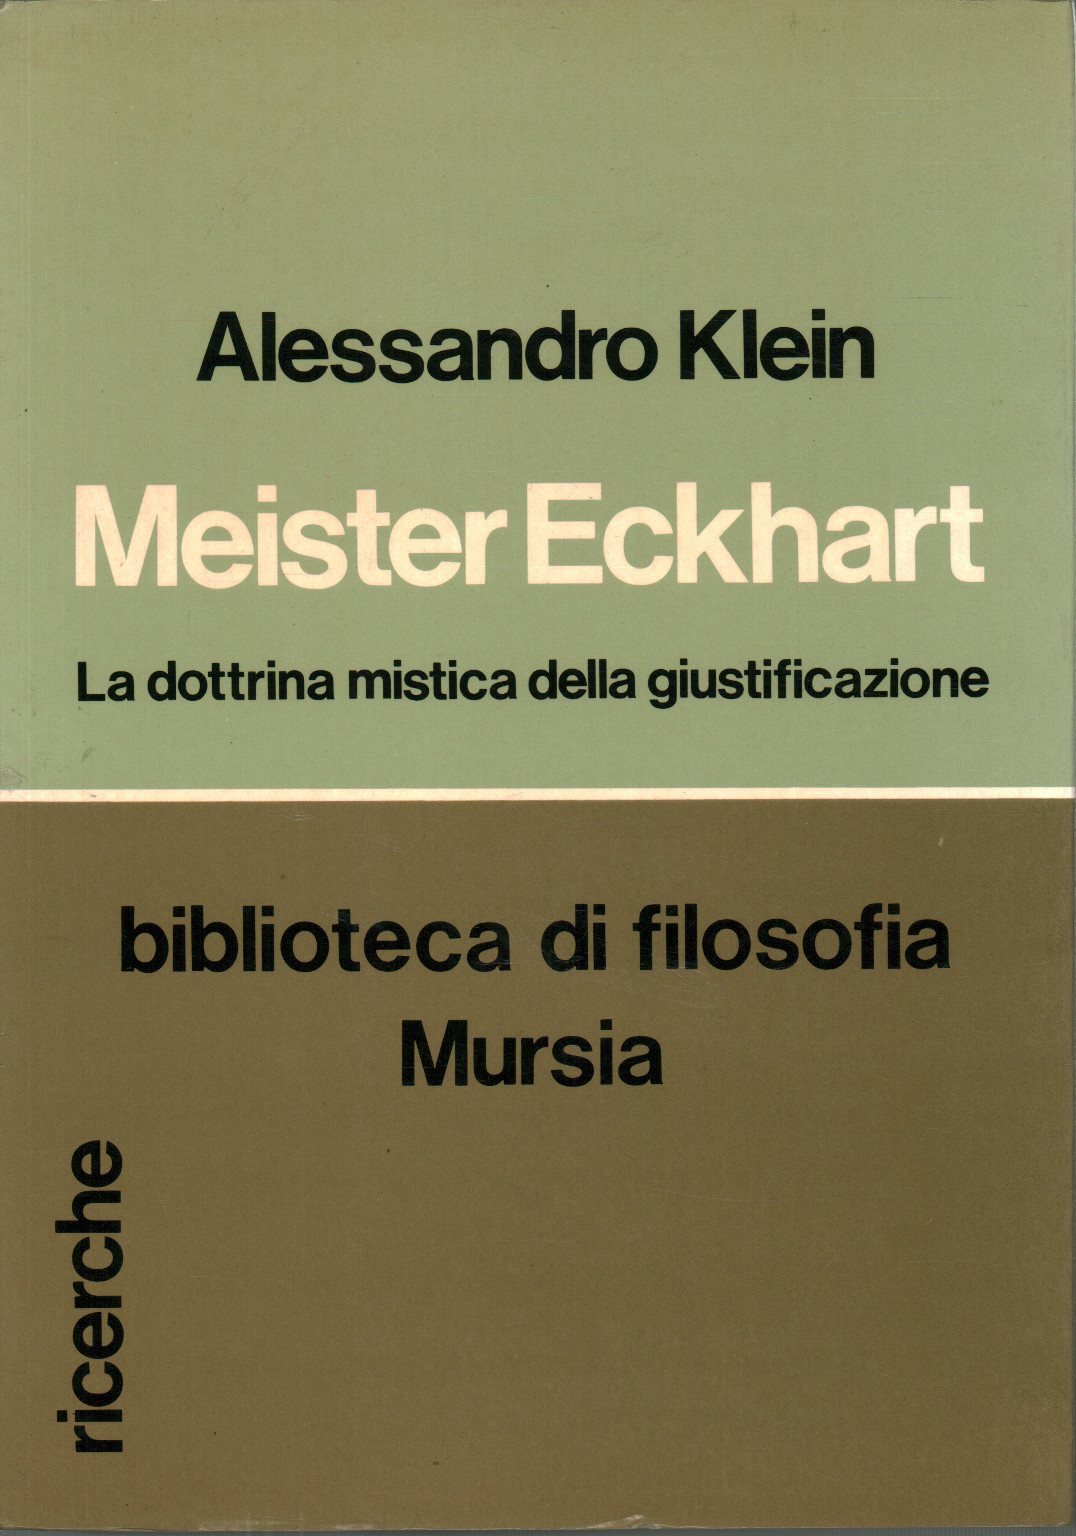 Meister Eckhart, s.un.